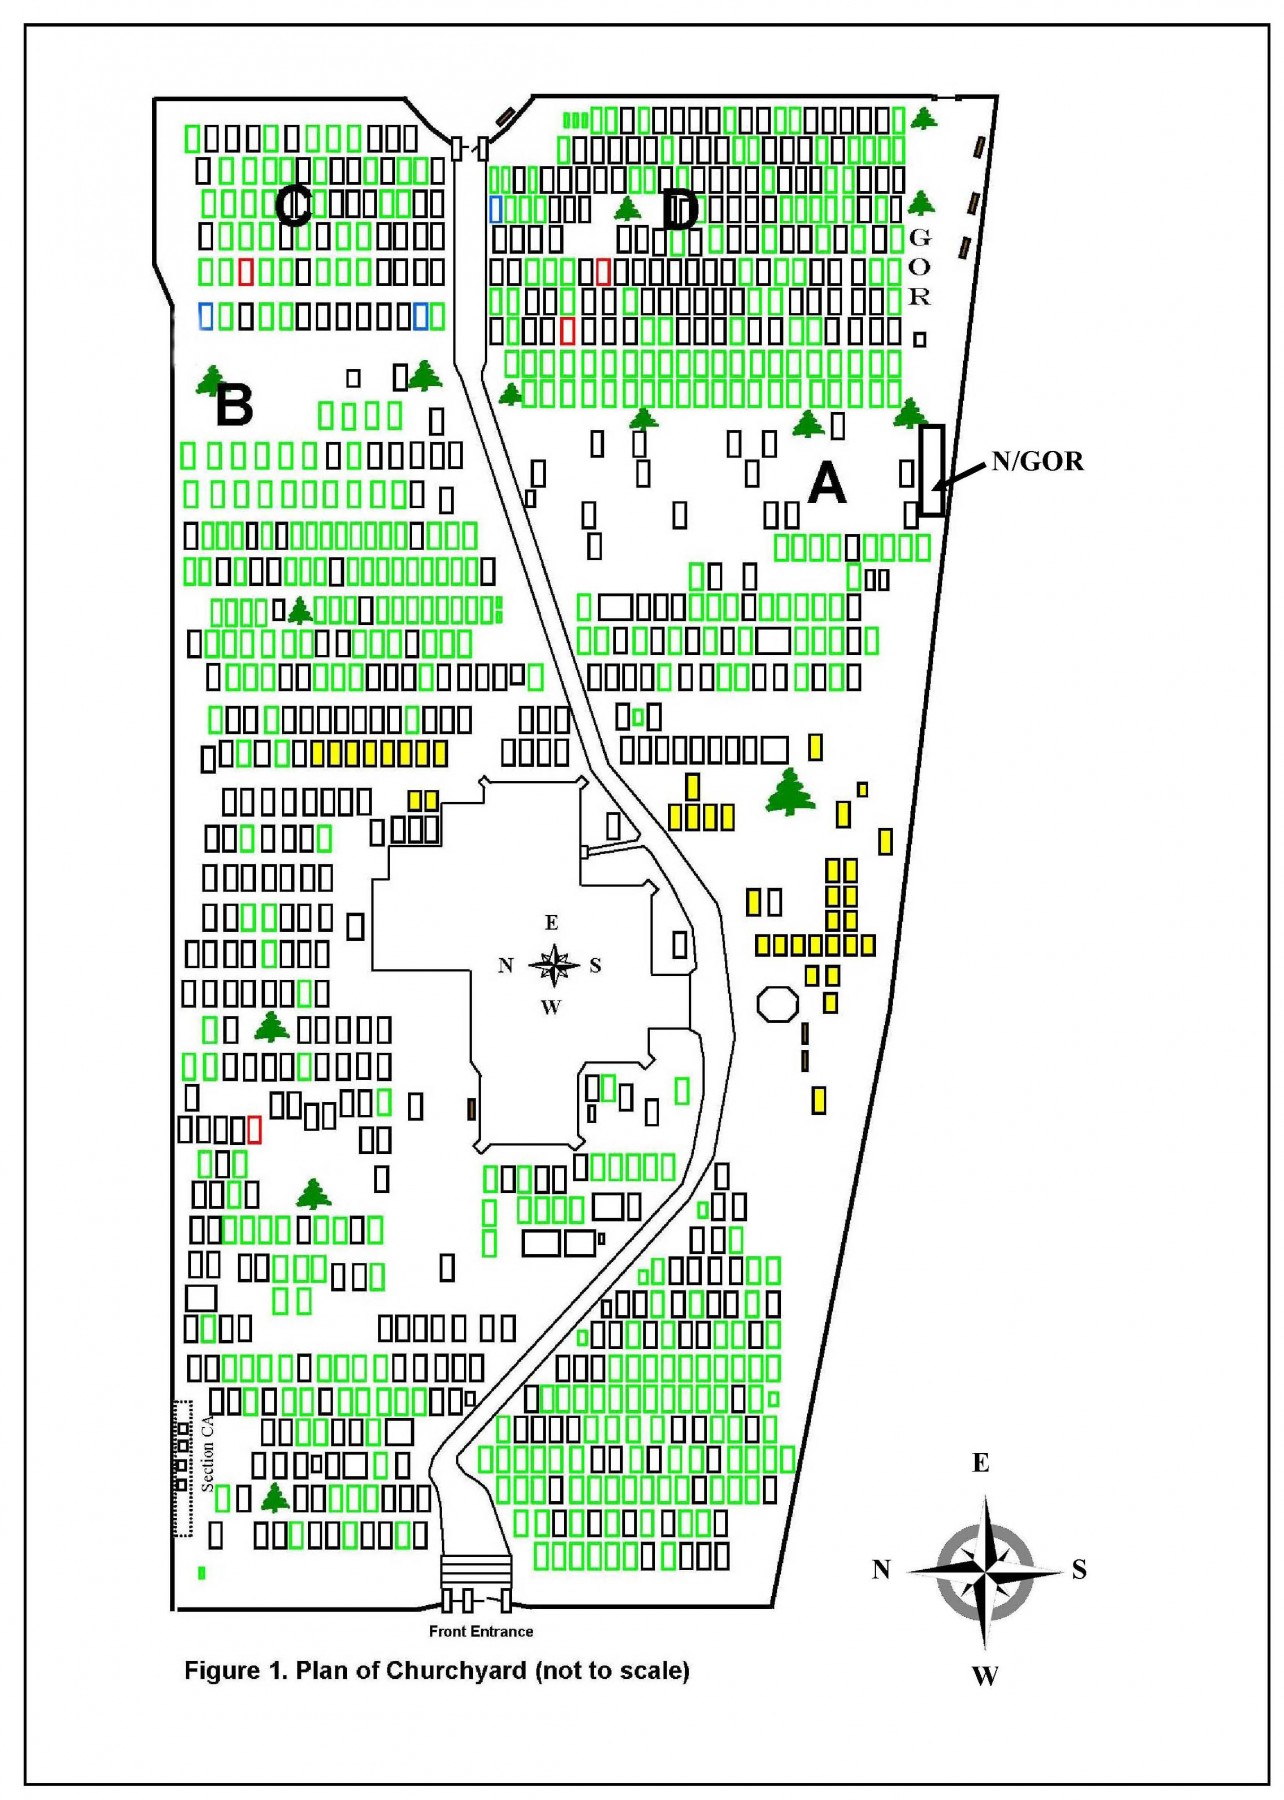 Plan of churchyard